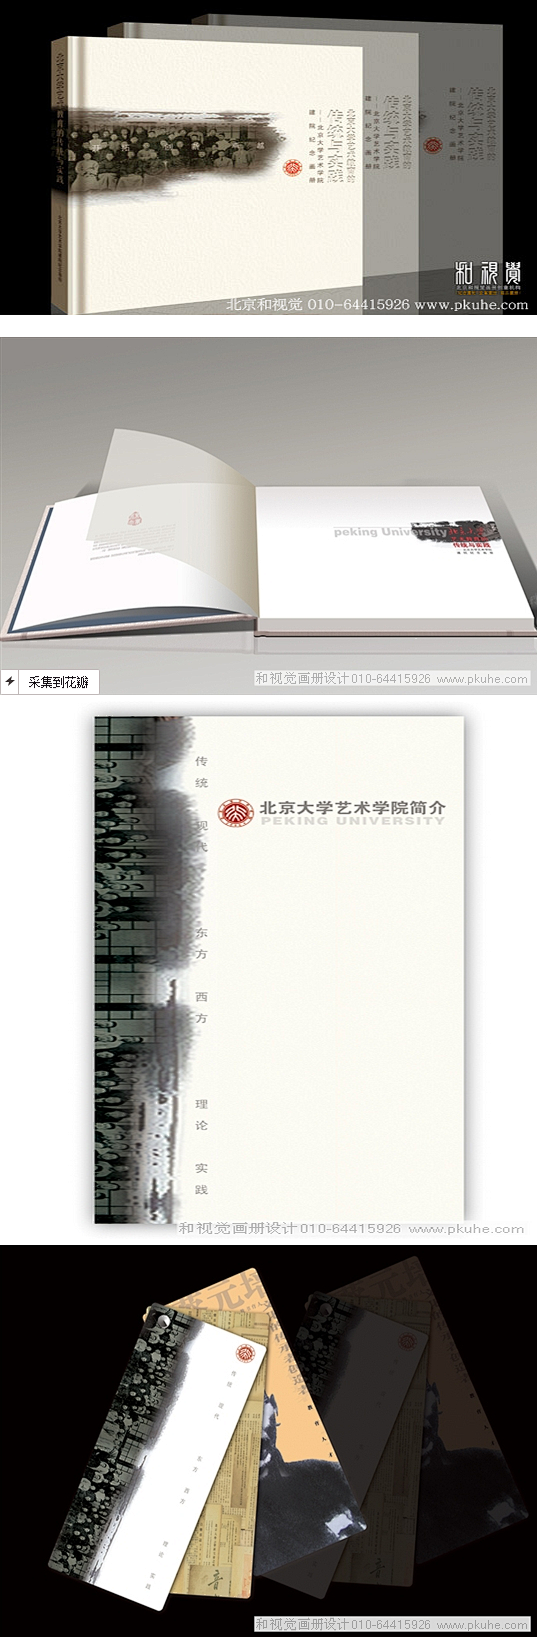 北京大学艺术学院建院纪念画册画册设计,宣...